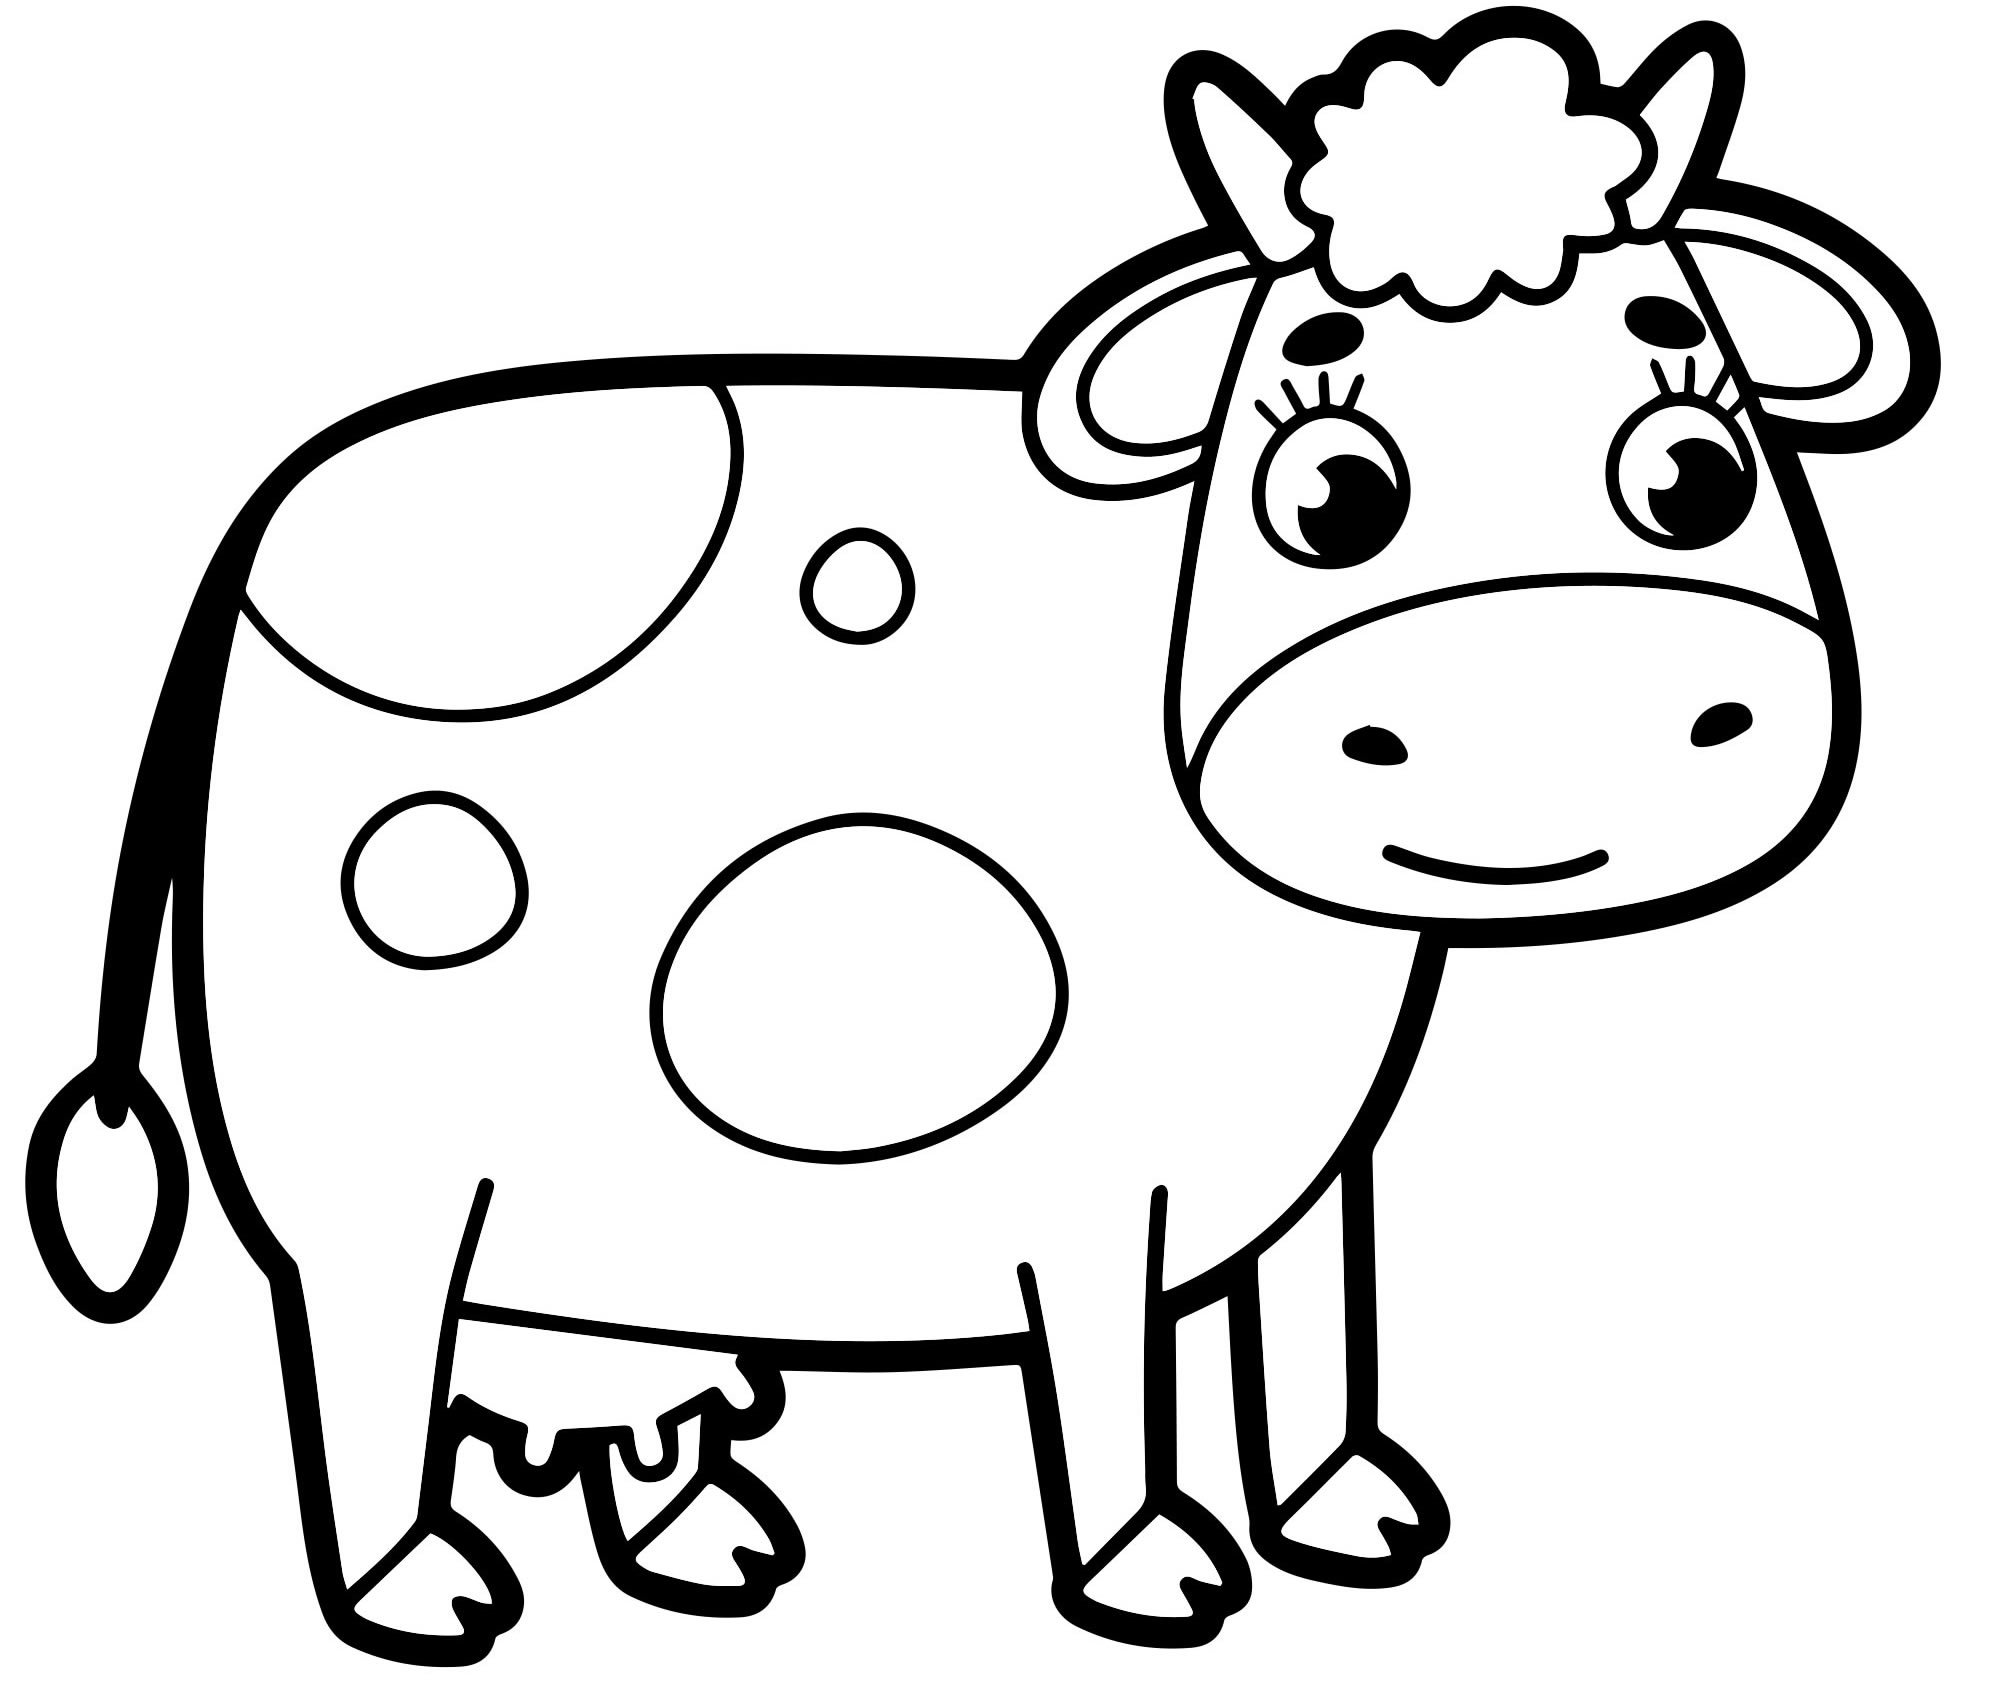 Игра Раскраска для детей Корова - играть онлайн бесплатно